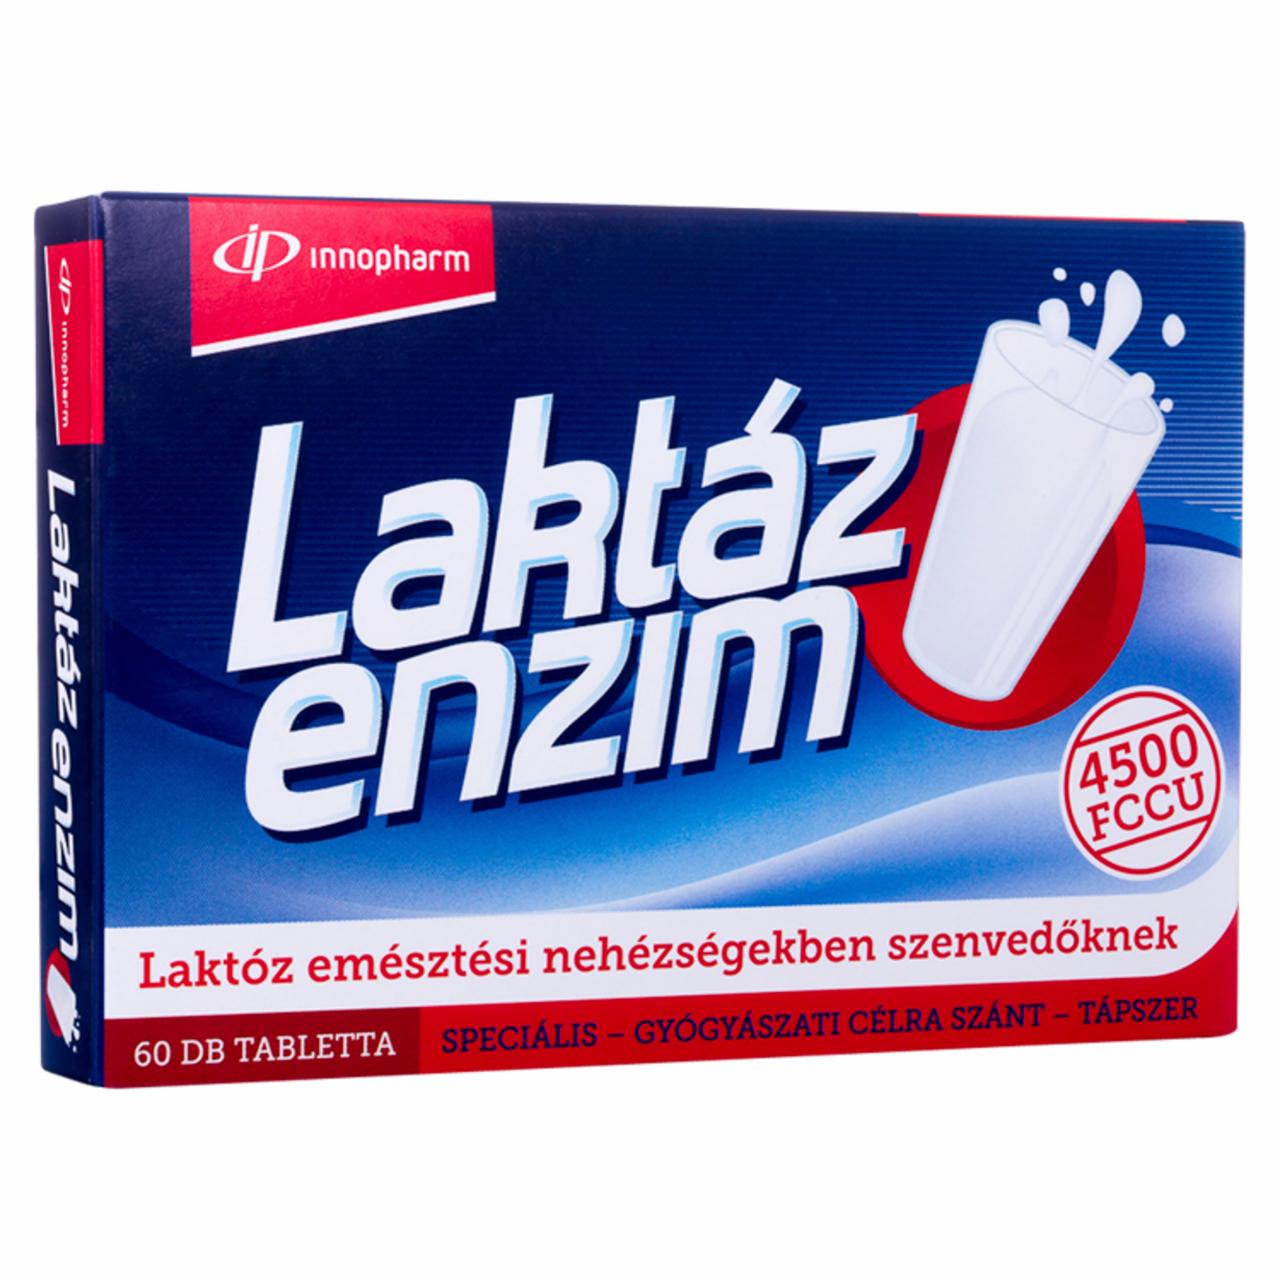 Képek - InnoPharm laktáz enzim tabletta 60 db 20,7 g